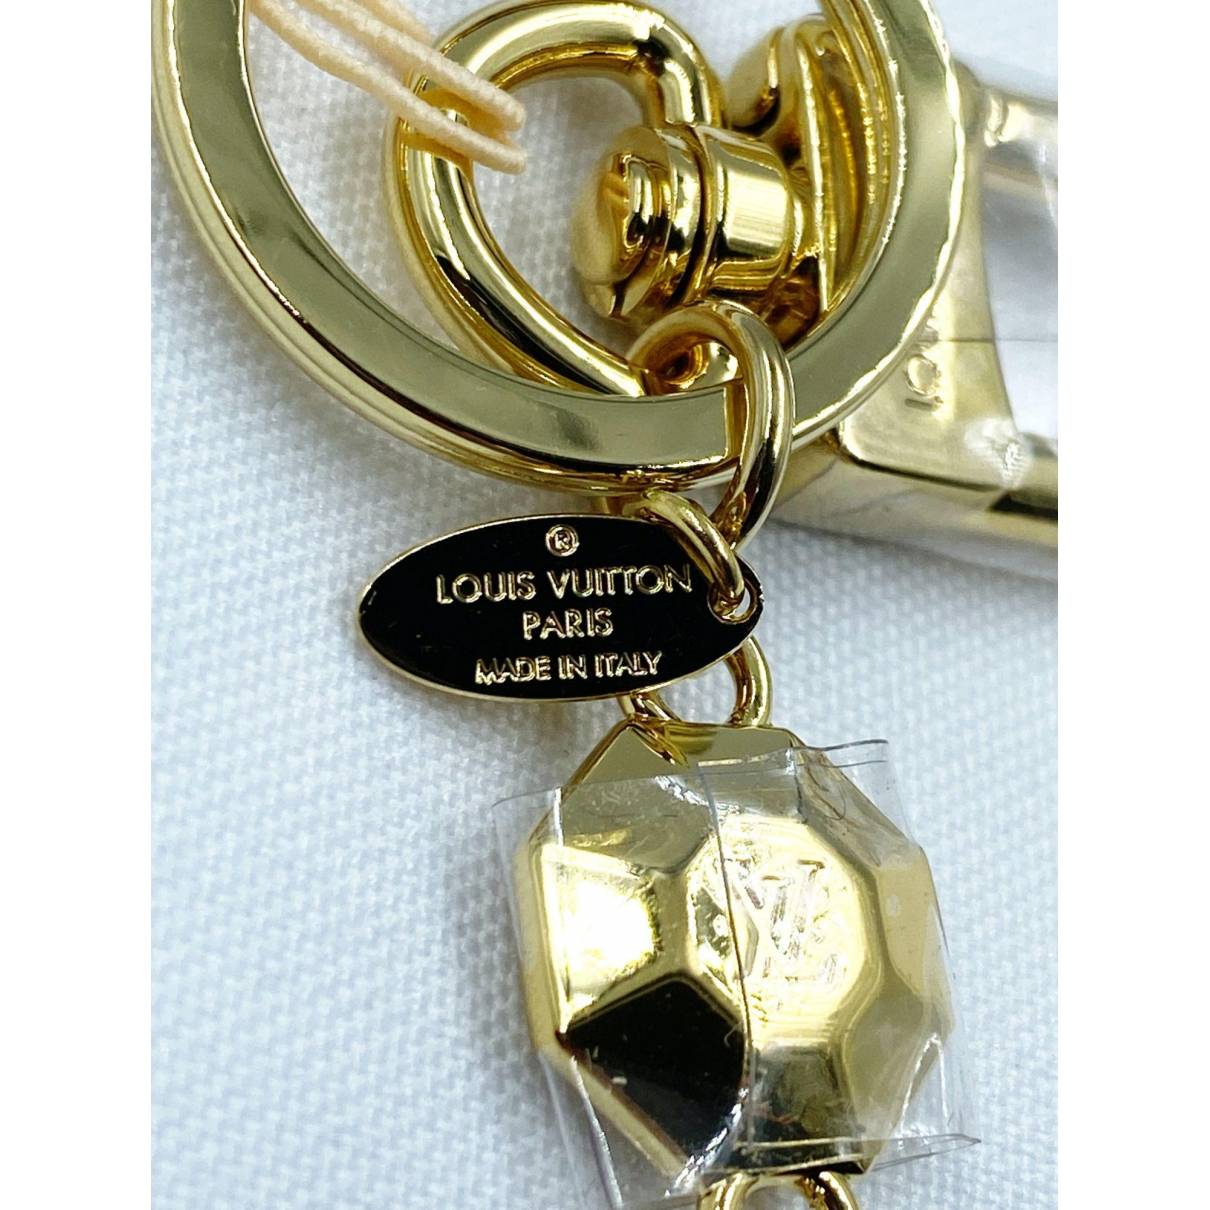 Louis Vuitton Kleinlederwaren aus Nicht angegeben - Gold - 25256087